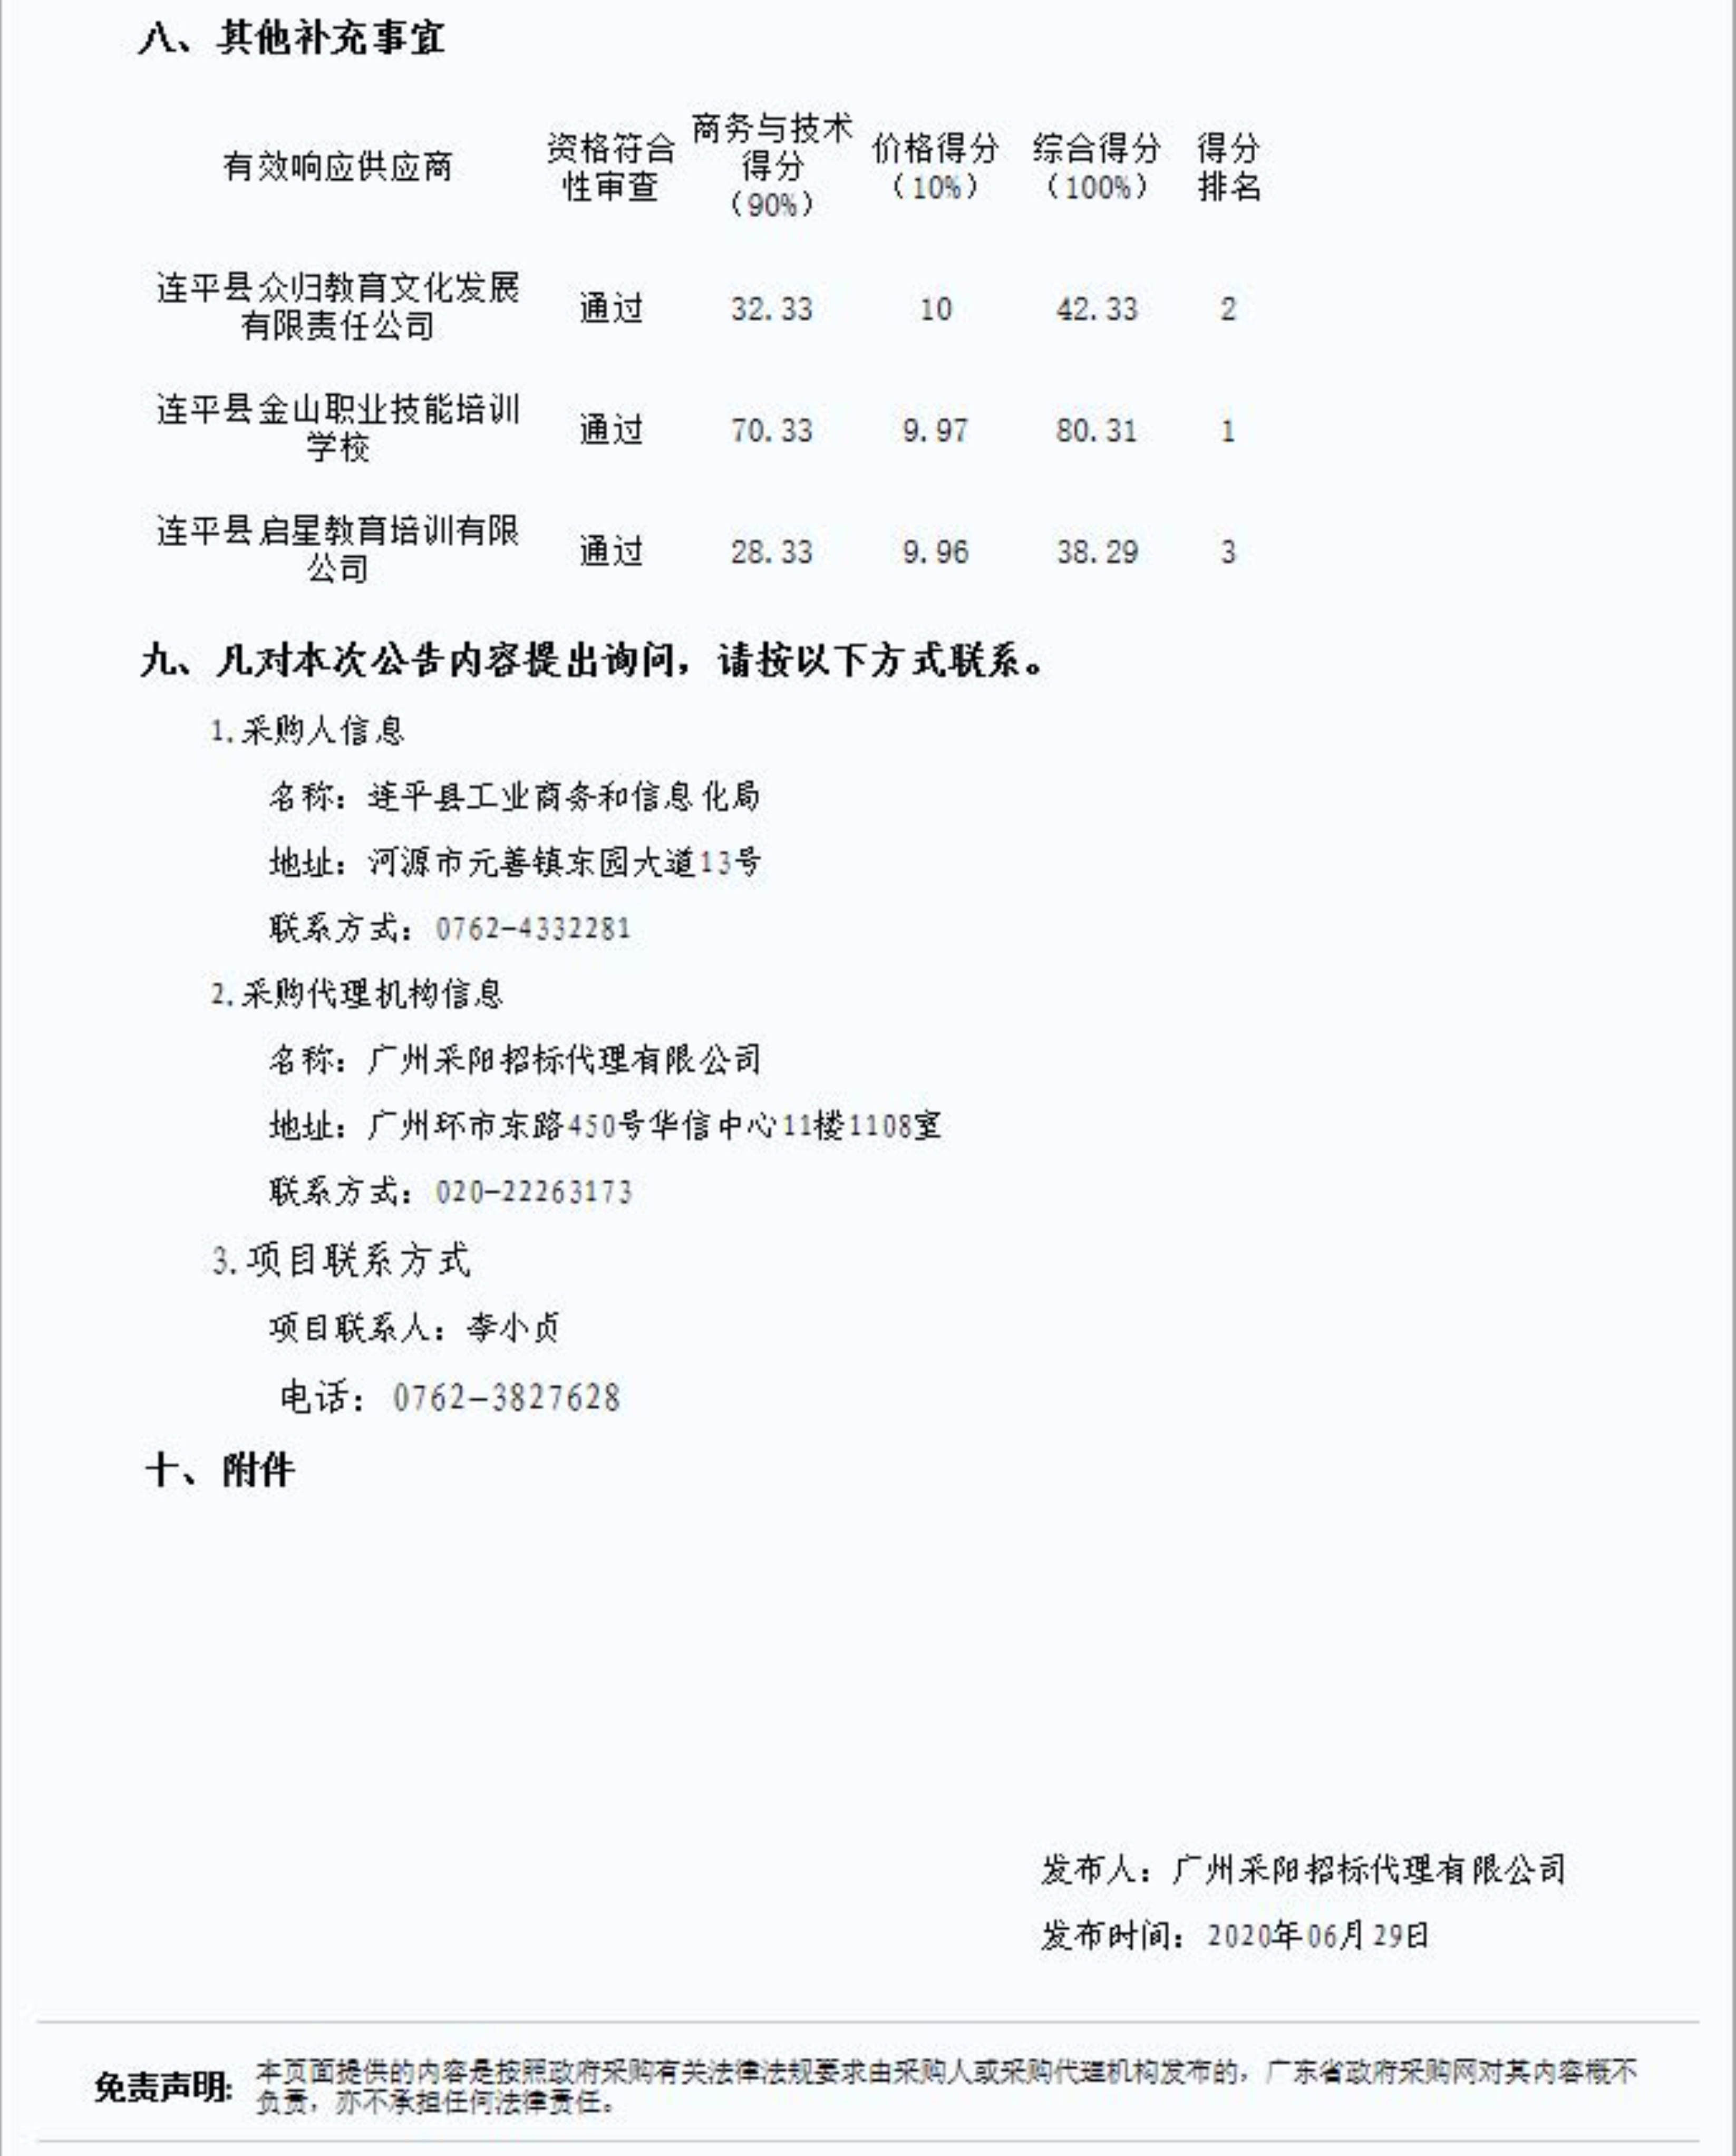 2.连平县电子商务进农村培训体系建设项目的成交结果公告_4.jpg